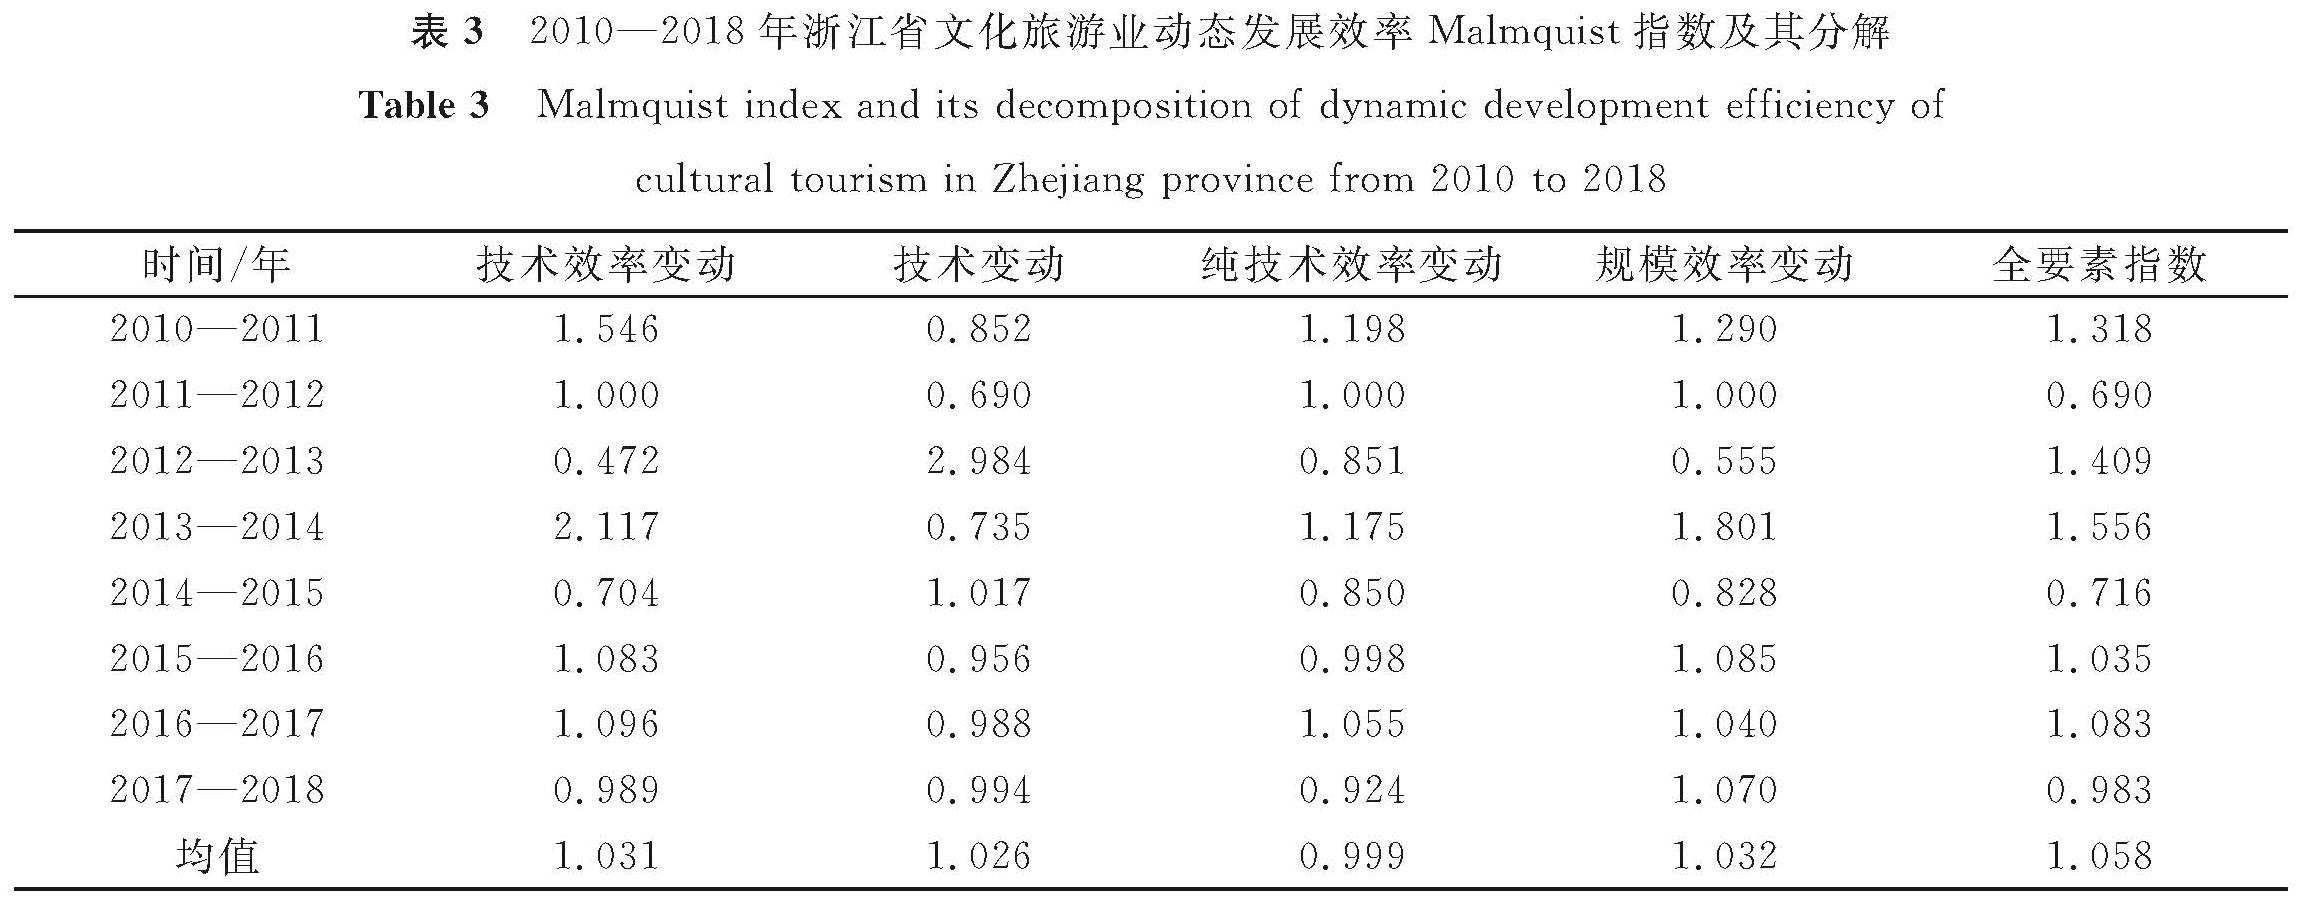 表3 2010—2018年浙江省文化旅游业动态发展效率Malmquist指数及其分解<br/>Table 3 Malmquist index and its decomposition of dynamic development efficiency of cultural tourism in Zhejiang province from 2010 to 2018